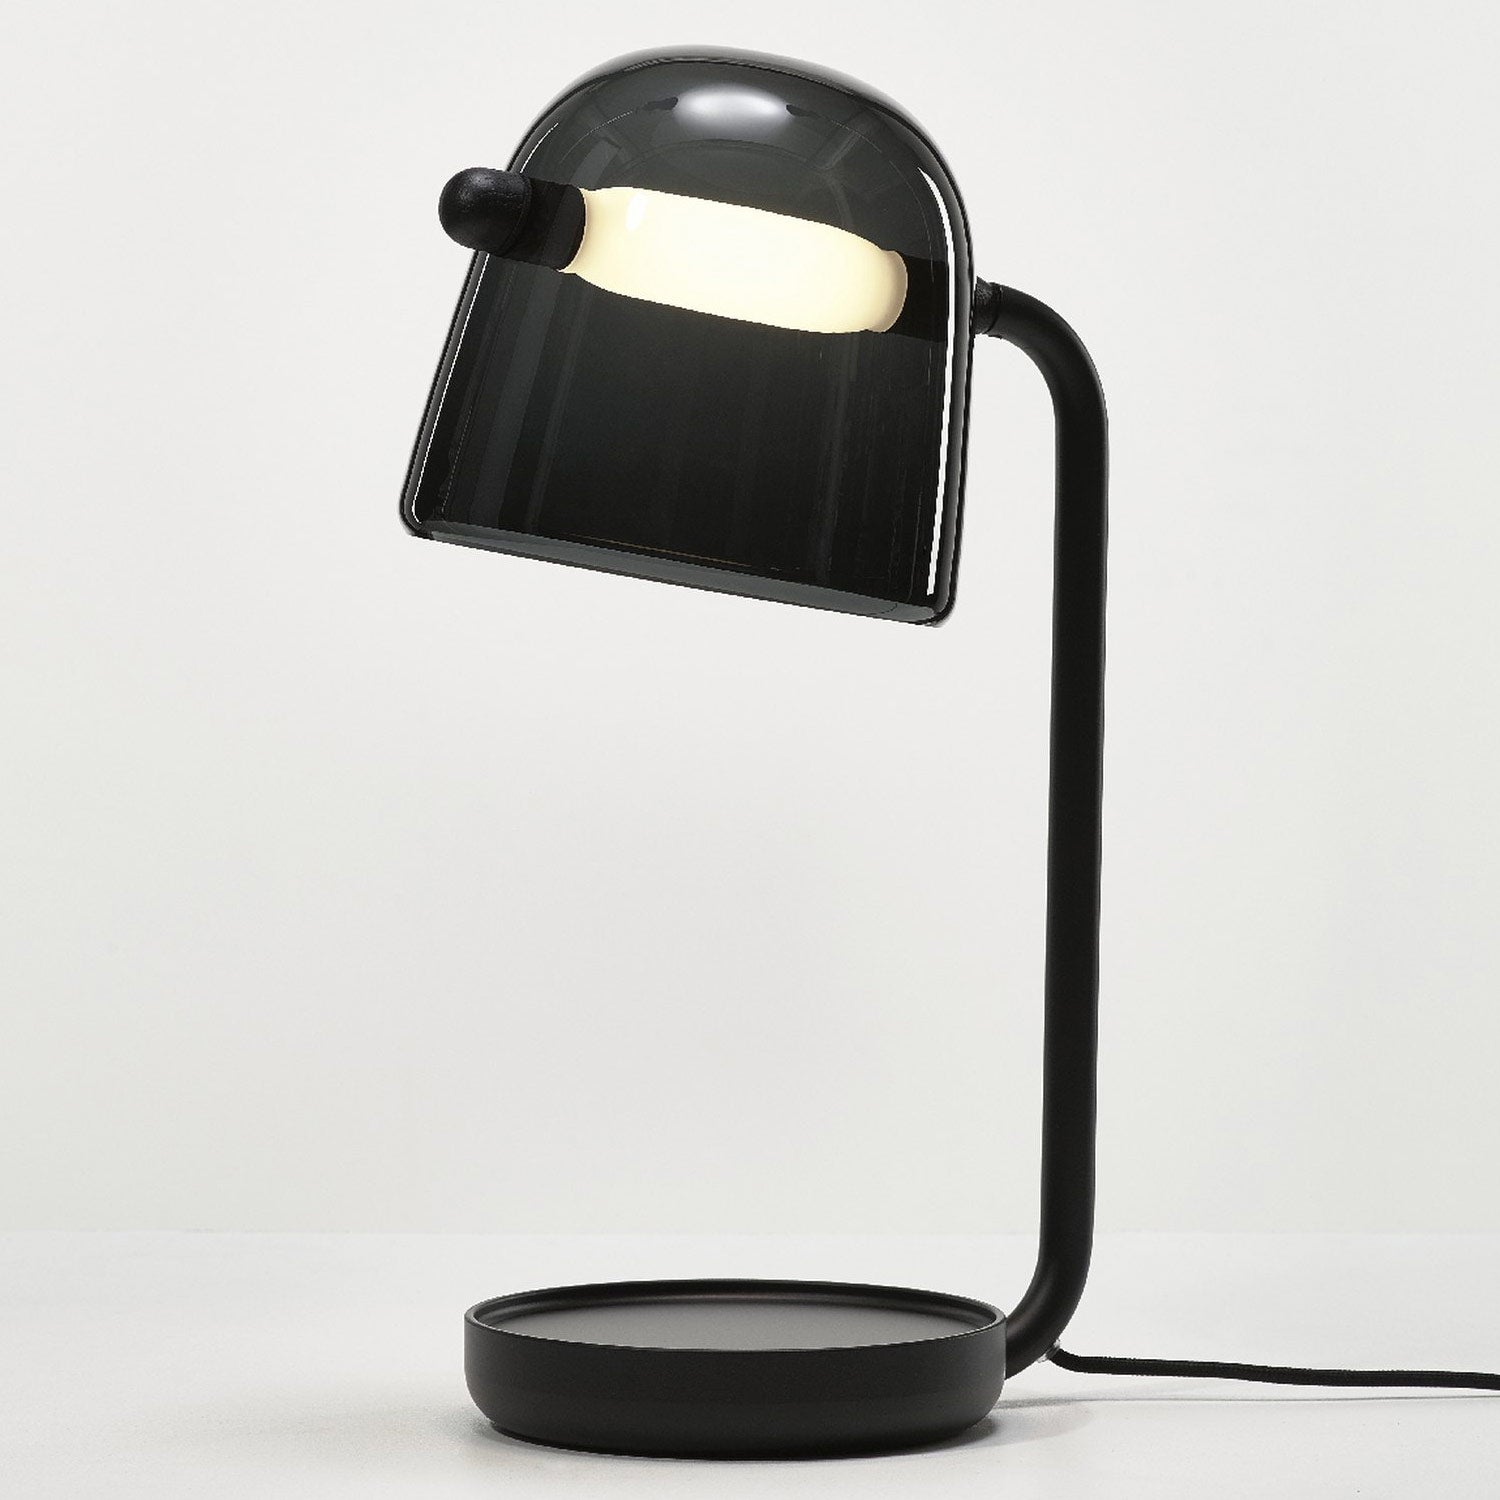 Desk Lamp Home lighting